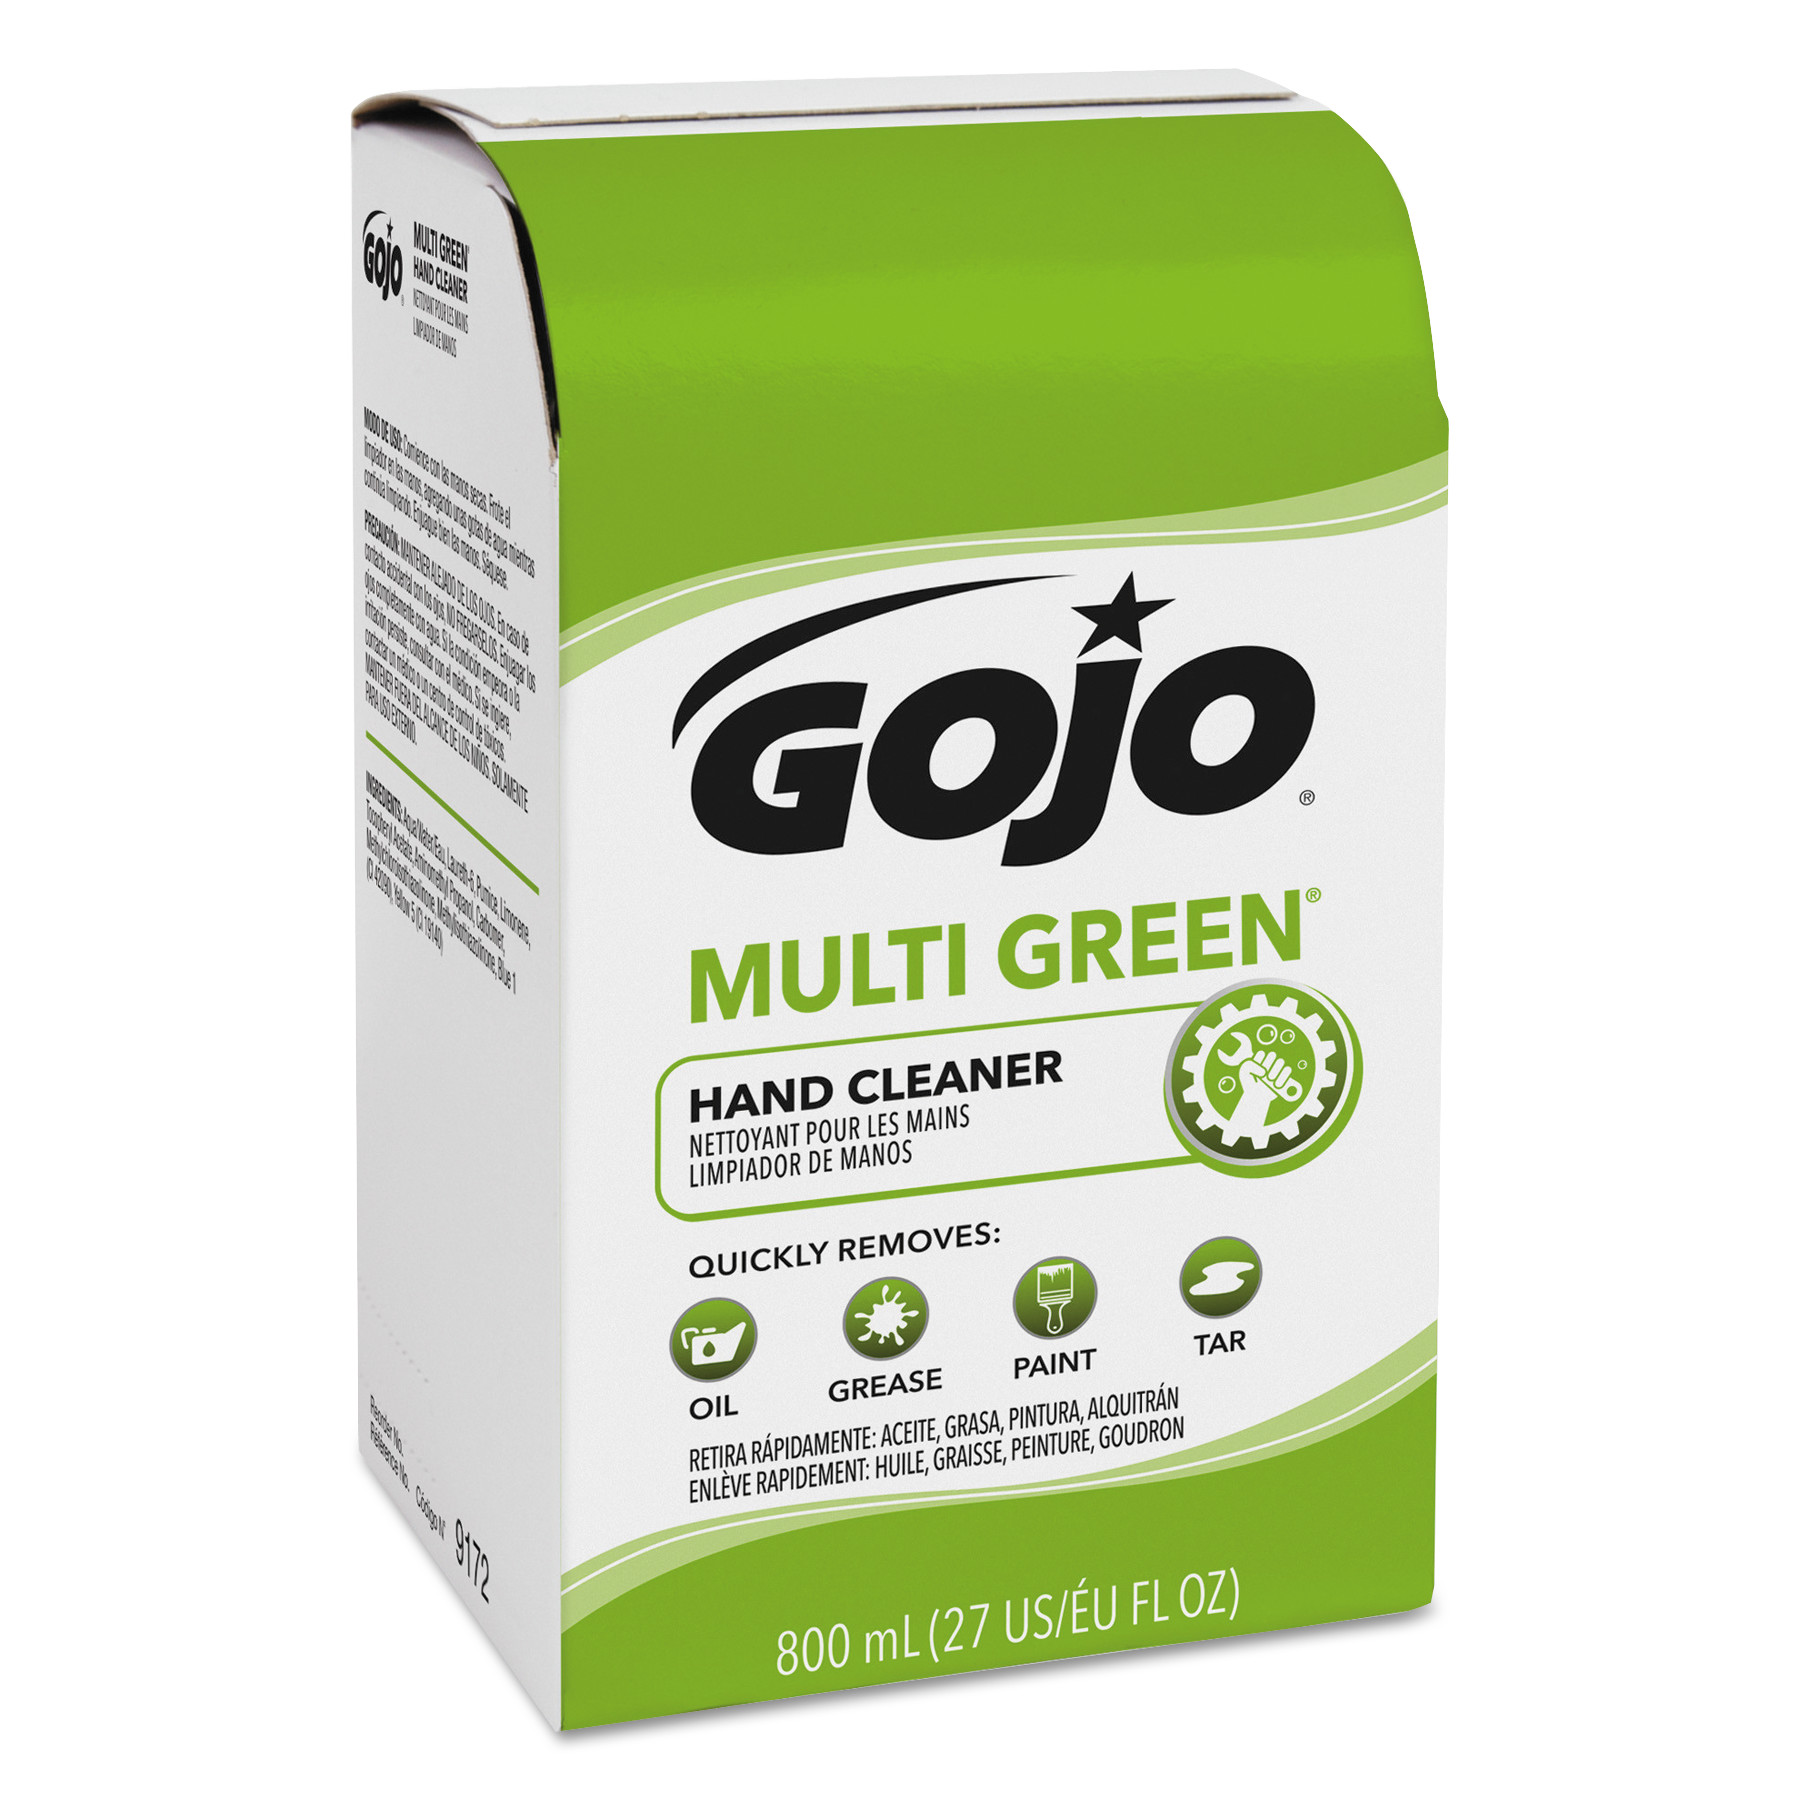 MULTI GREEN Hand Cleaner 800mL Bag-in-Box Dispenser Refill, 12/Carton